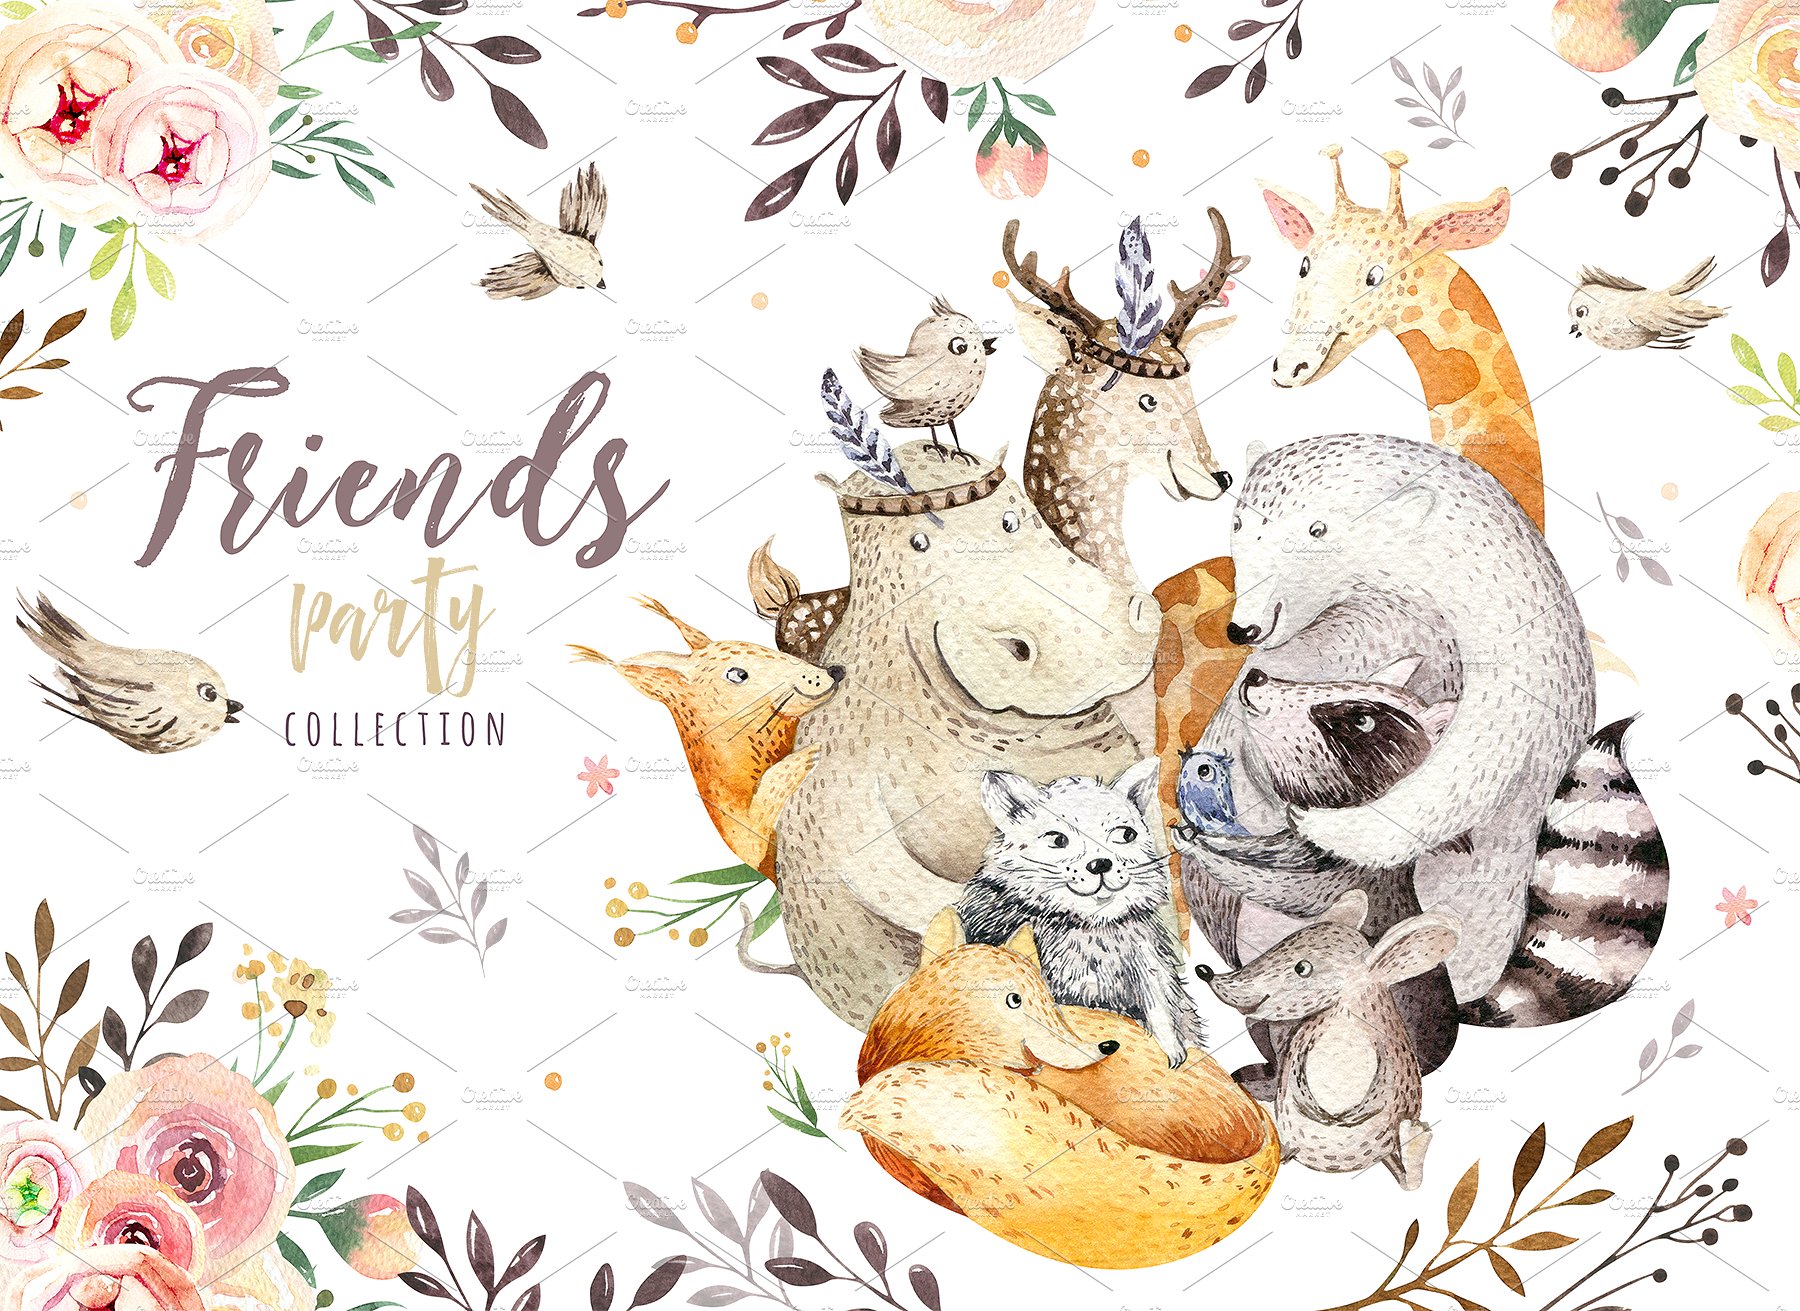 高品质的手绘波西米亚风格动物插图 Friends party.Boho collection插图1